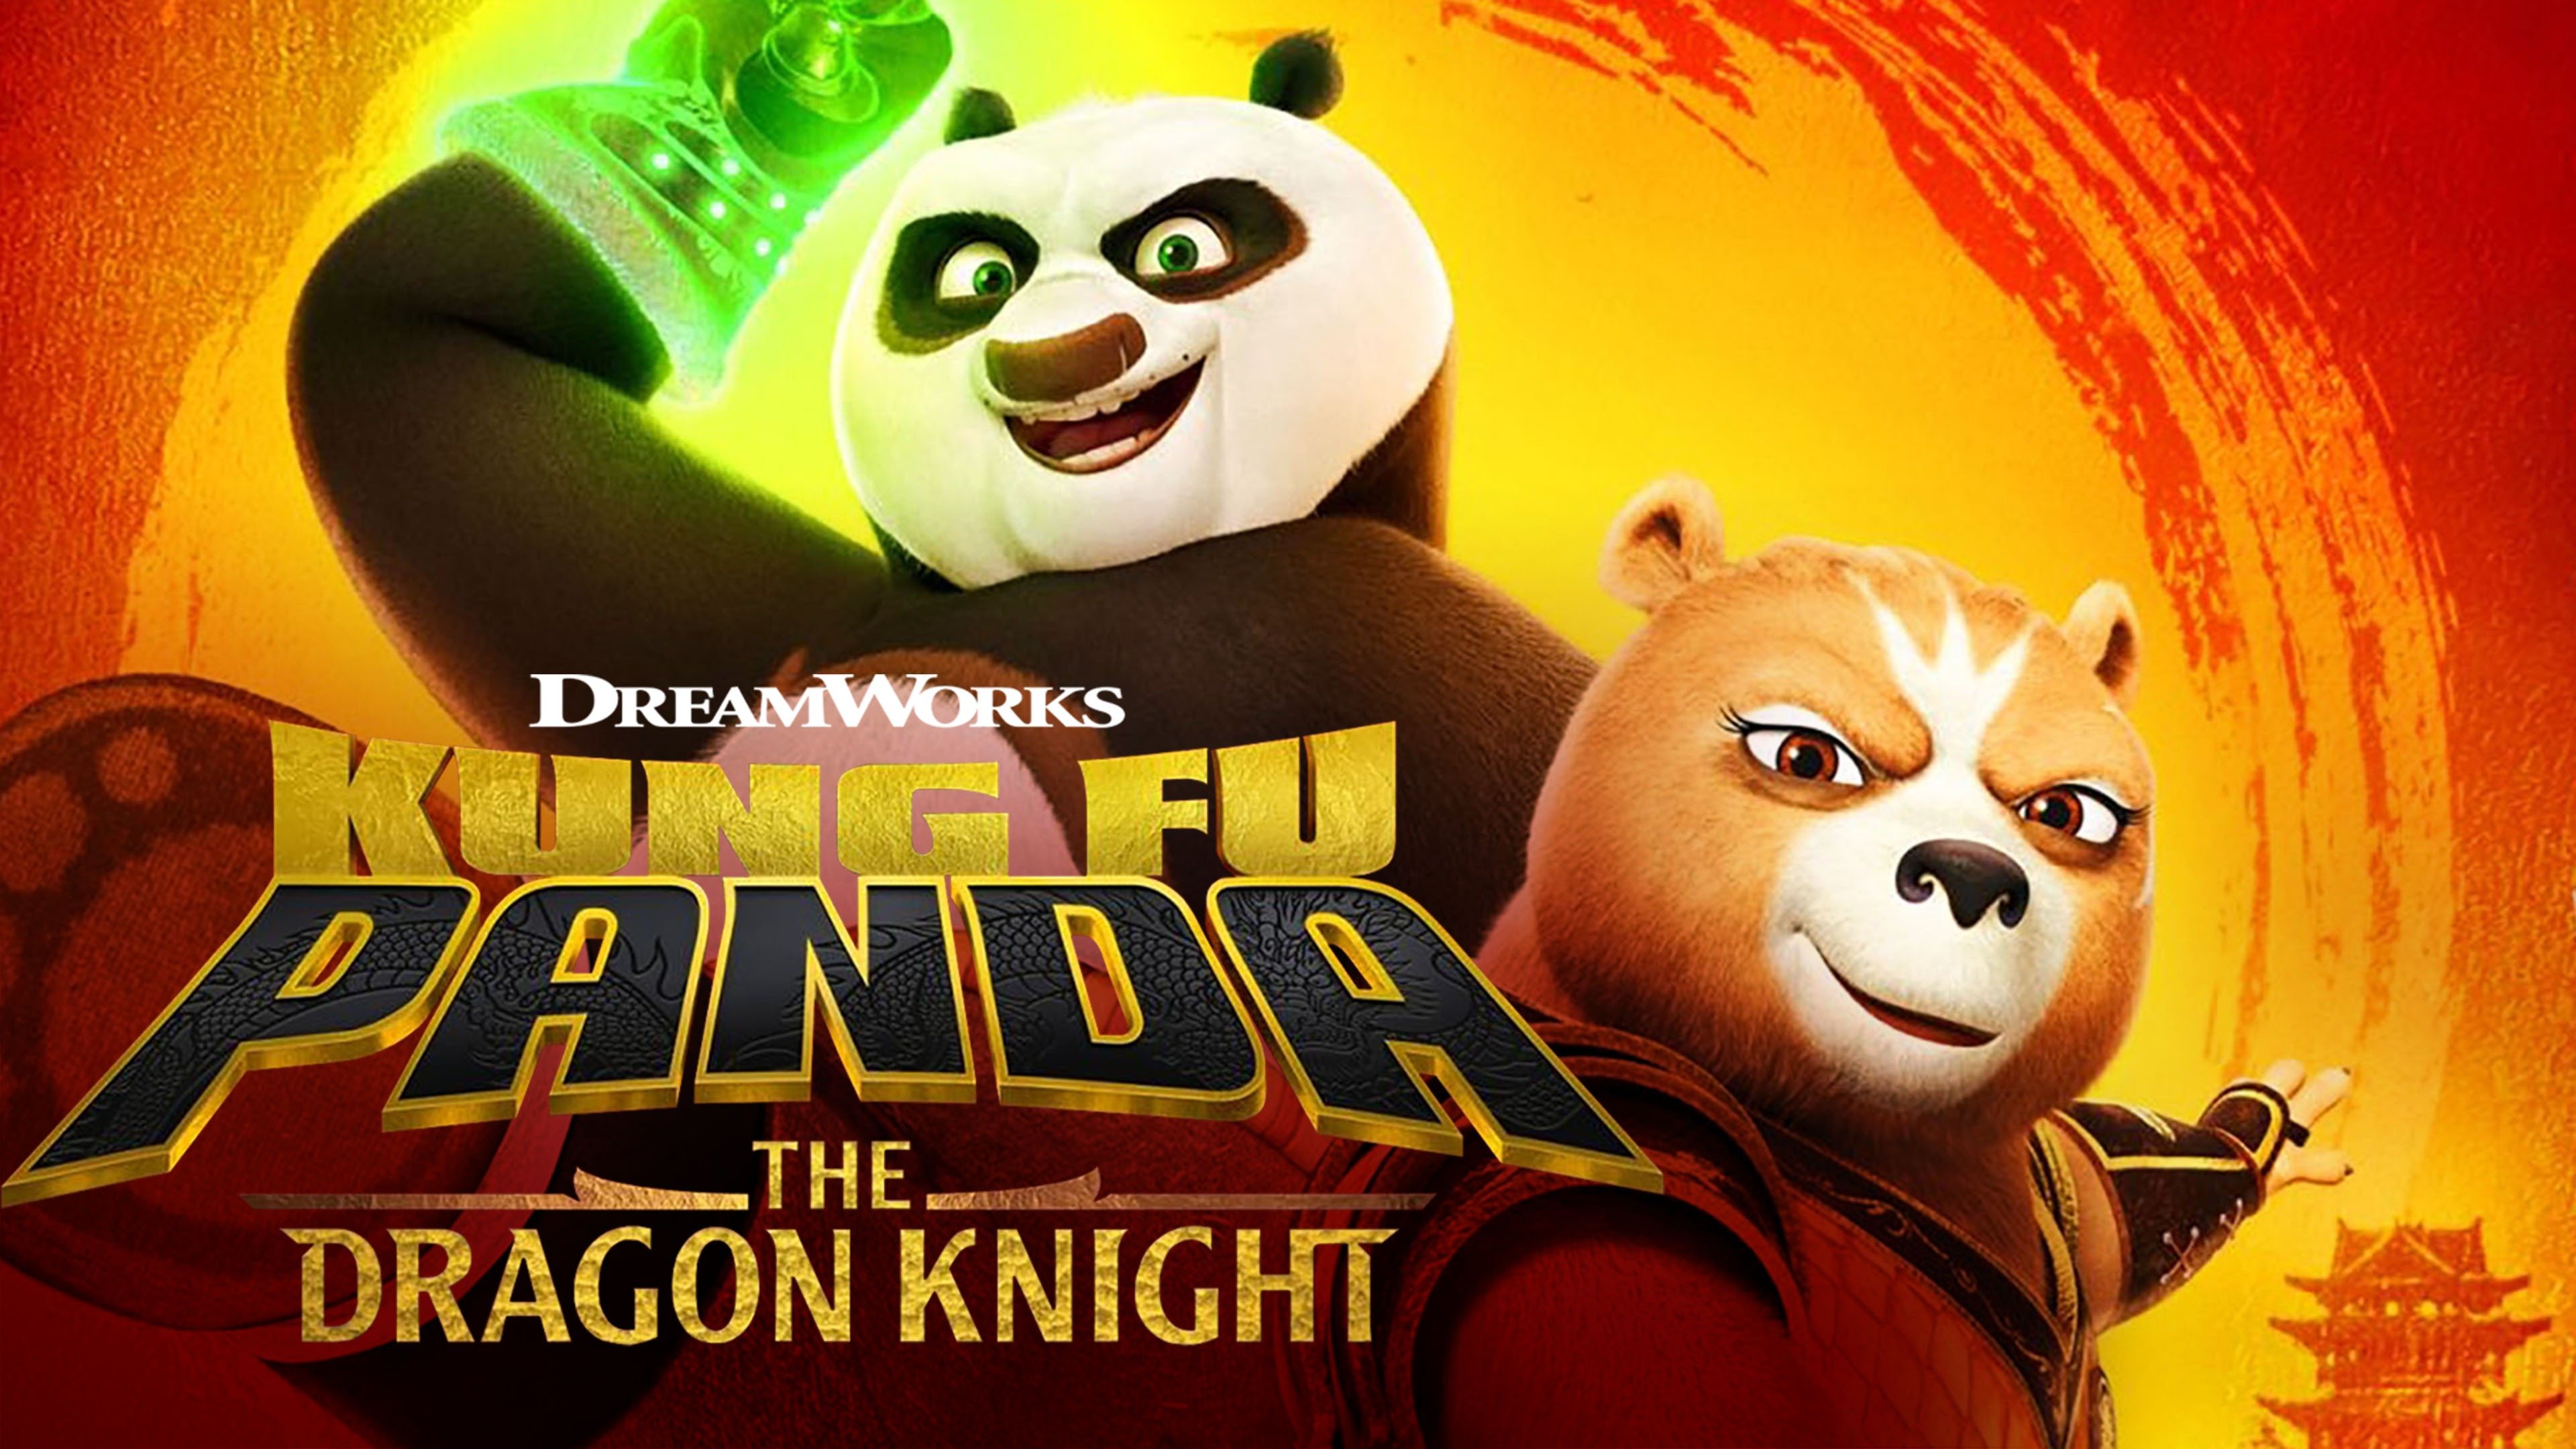 功夫熊猫英文版 第5季《Kung Fu Panda》在线观看